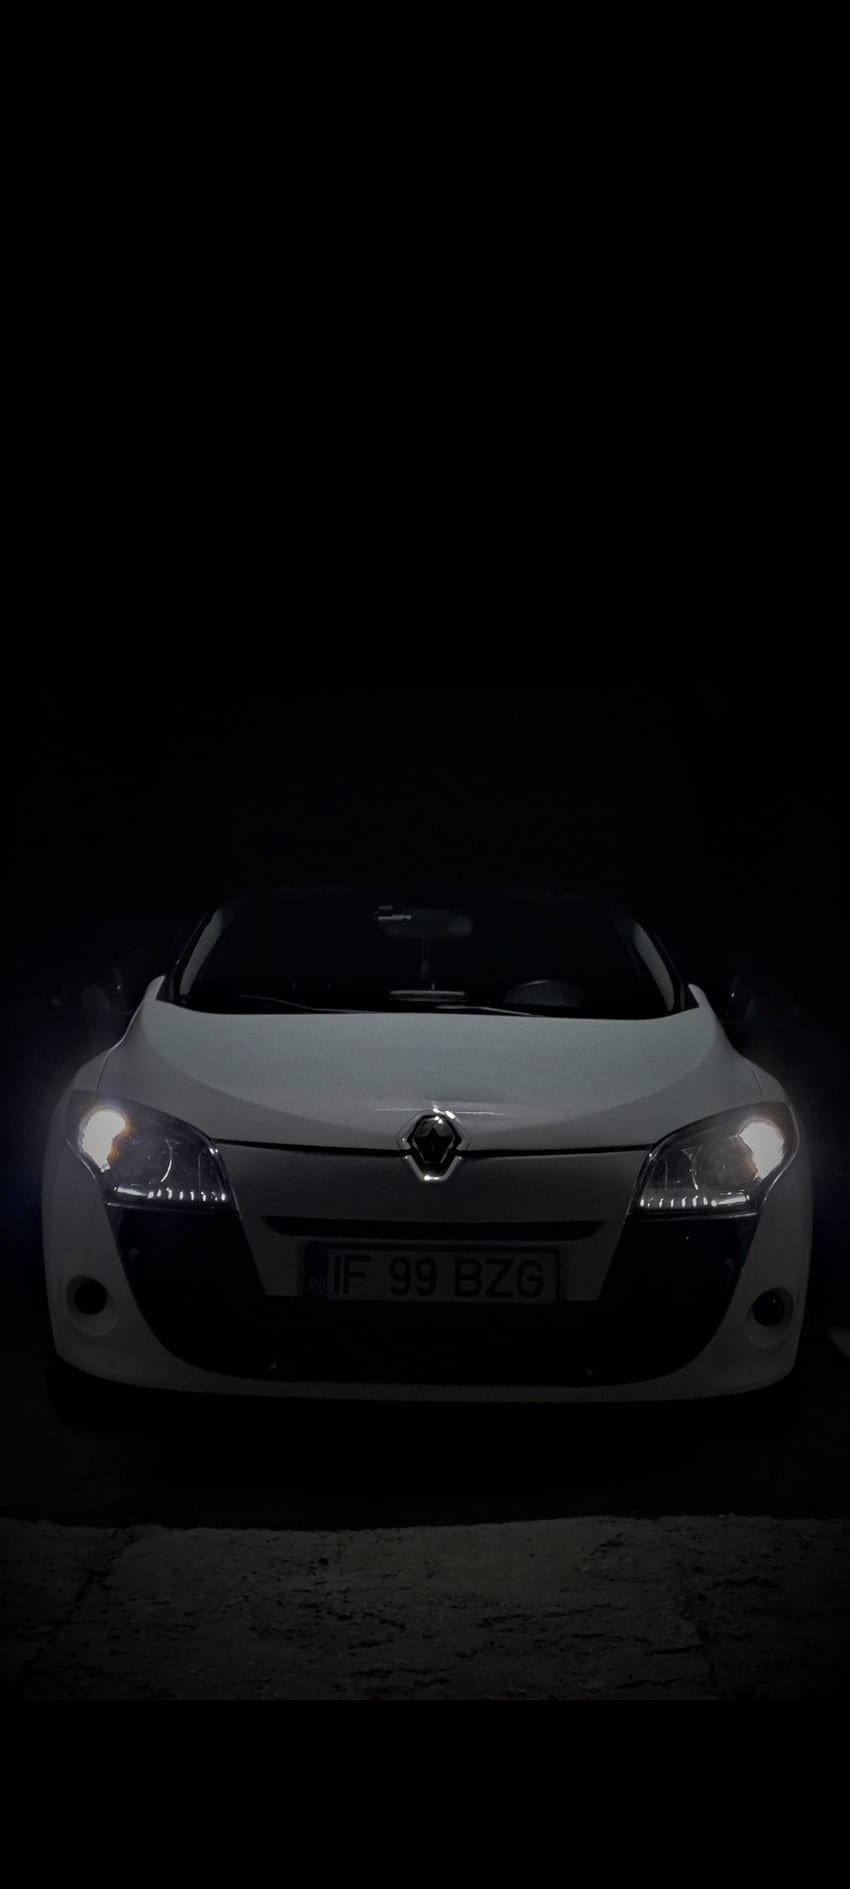 Megane 3 coupe, cars, Renault, car HD phone wallpaper